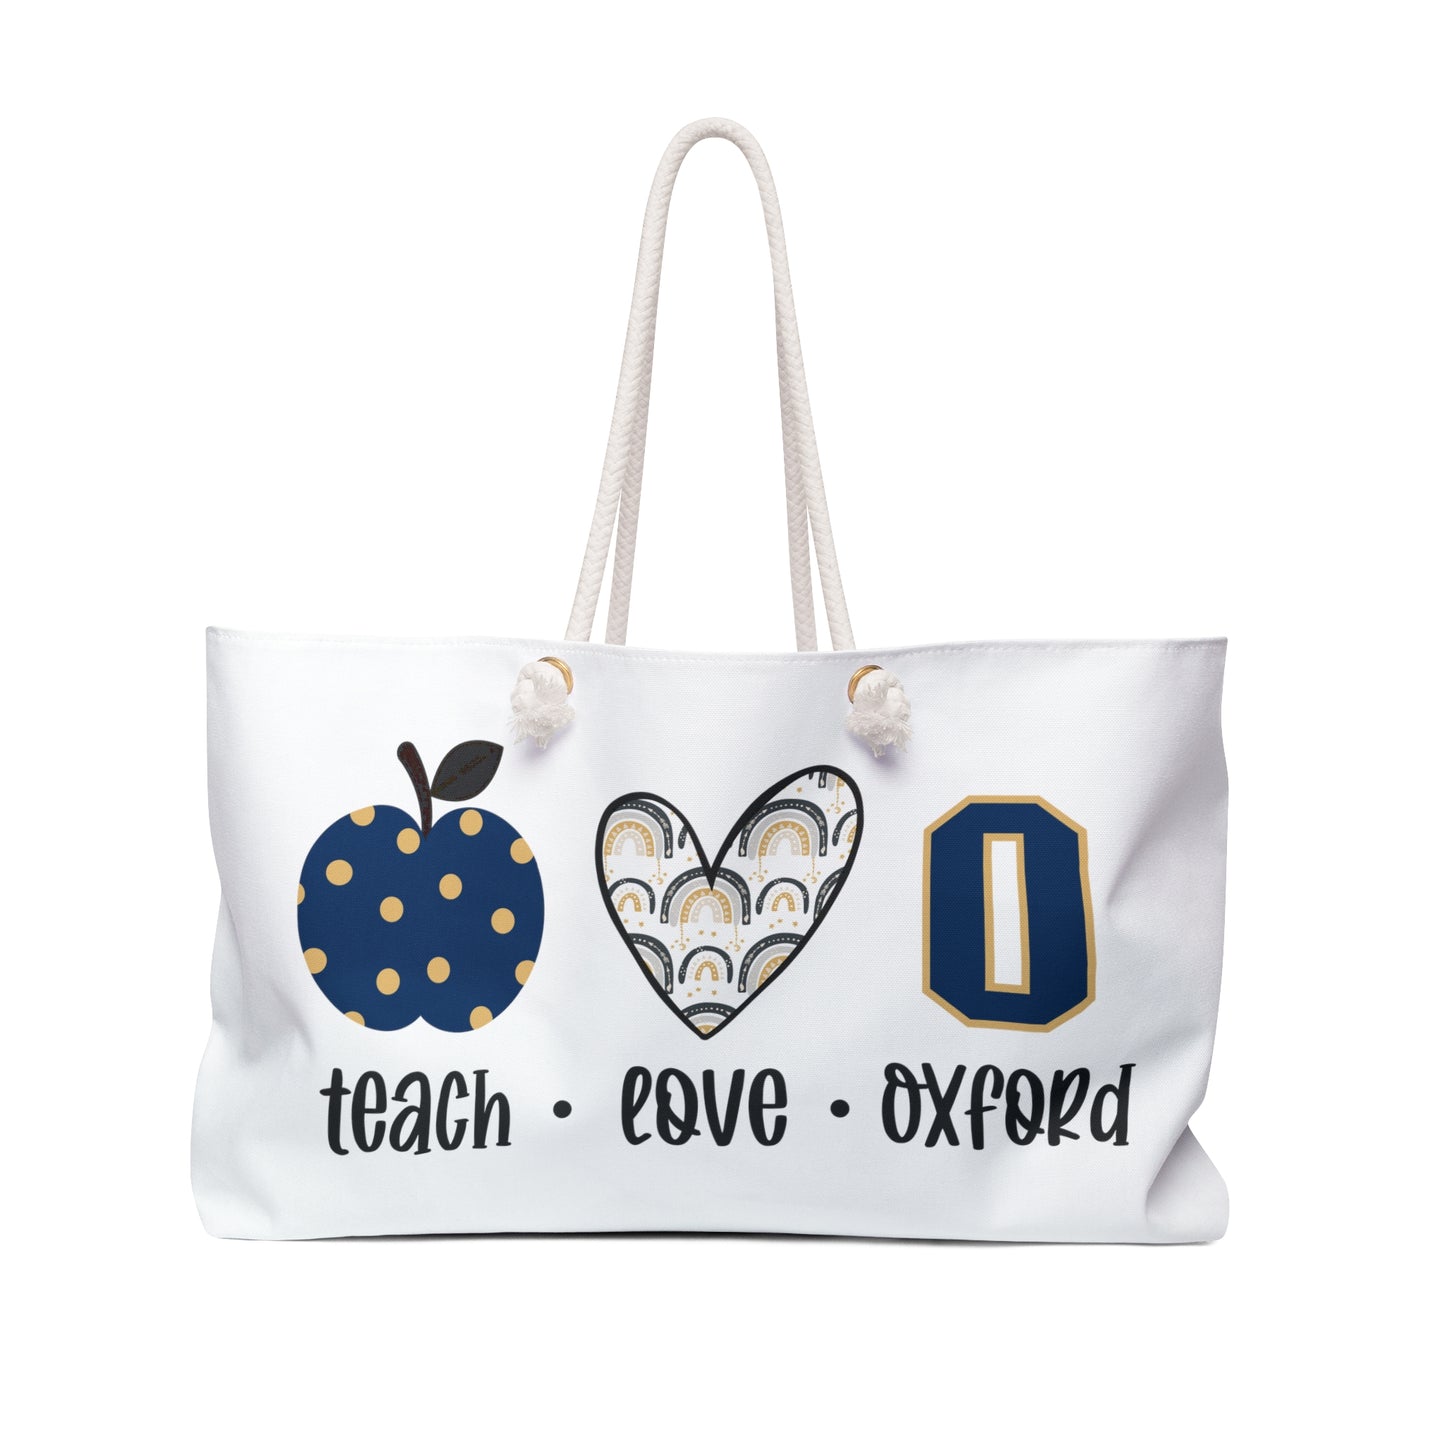 Personalized Teach Love Oxford Weekender Bag